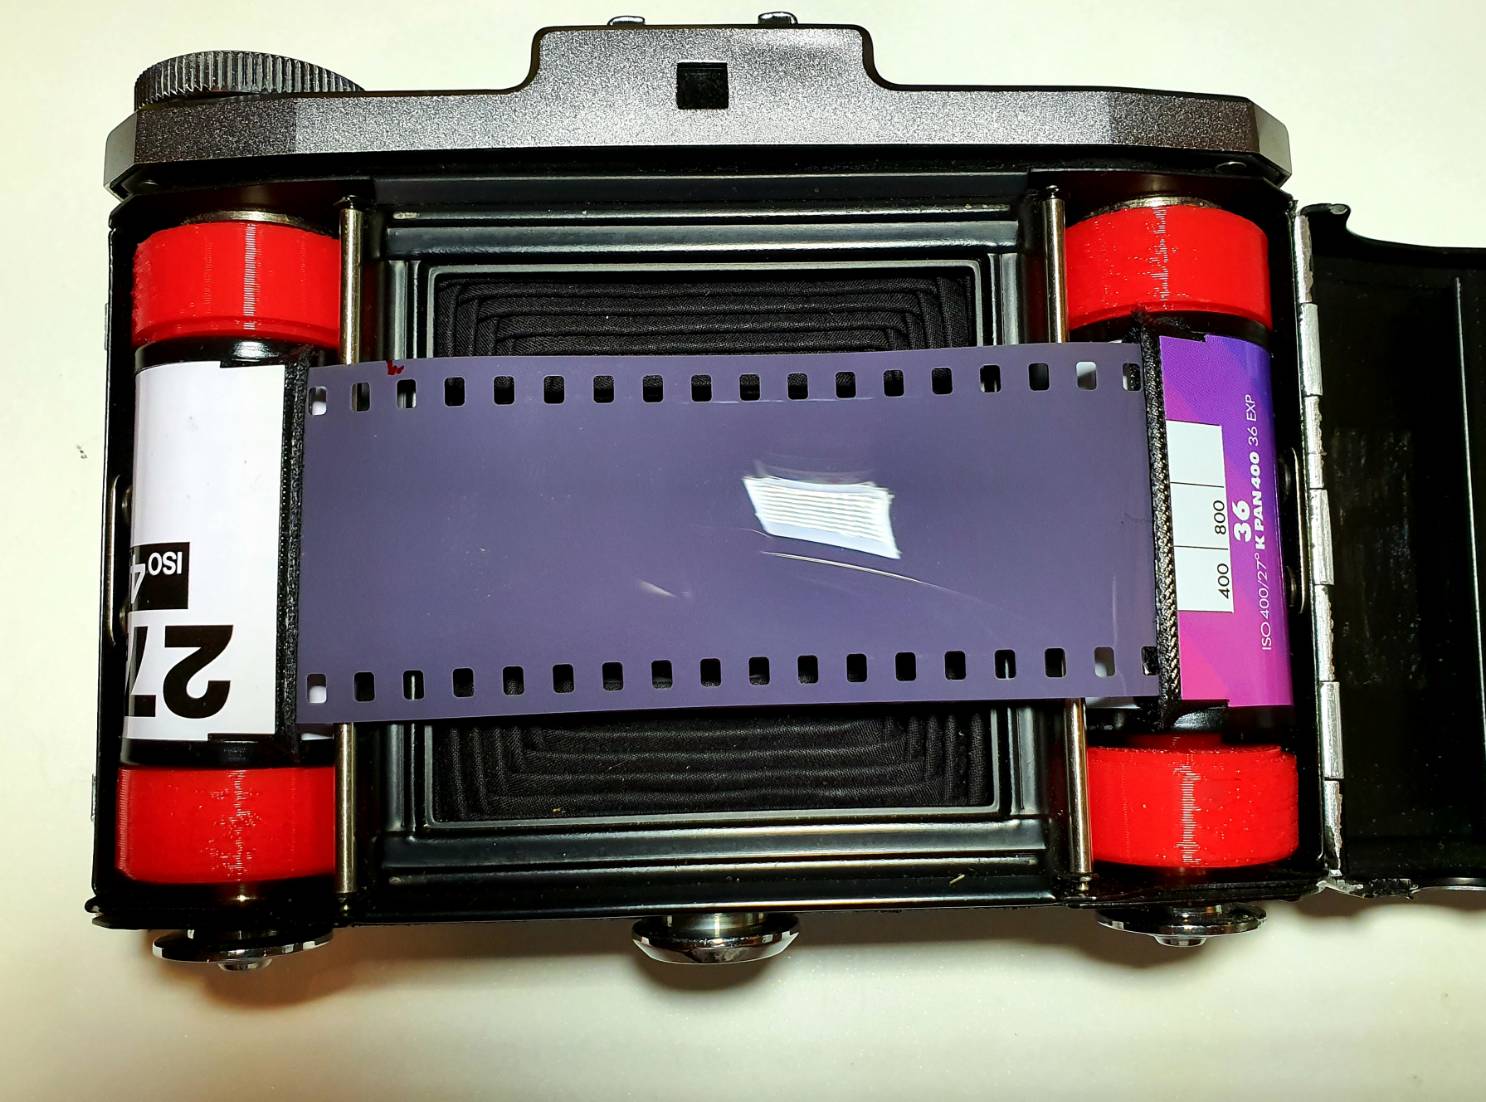 ฟิล์ม 135 ถ่ายด้วยกล้อง Medium Format ได้ภาพติดหนามเตย